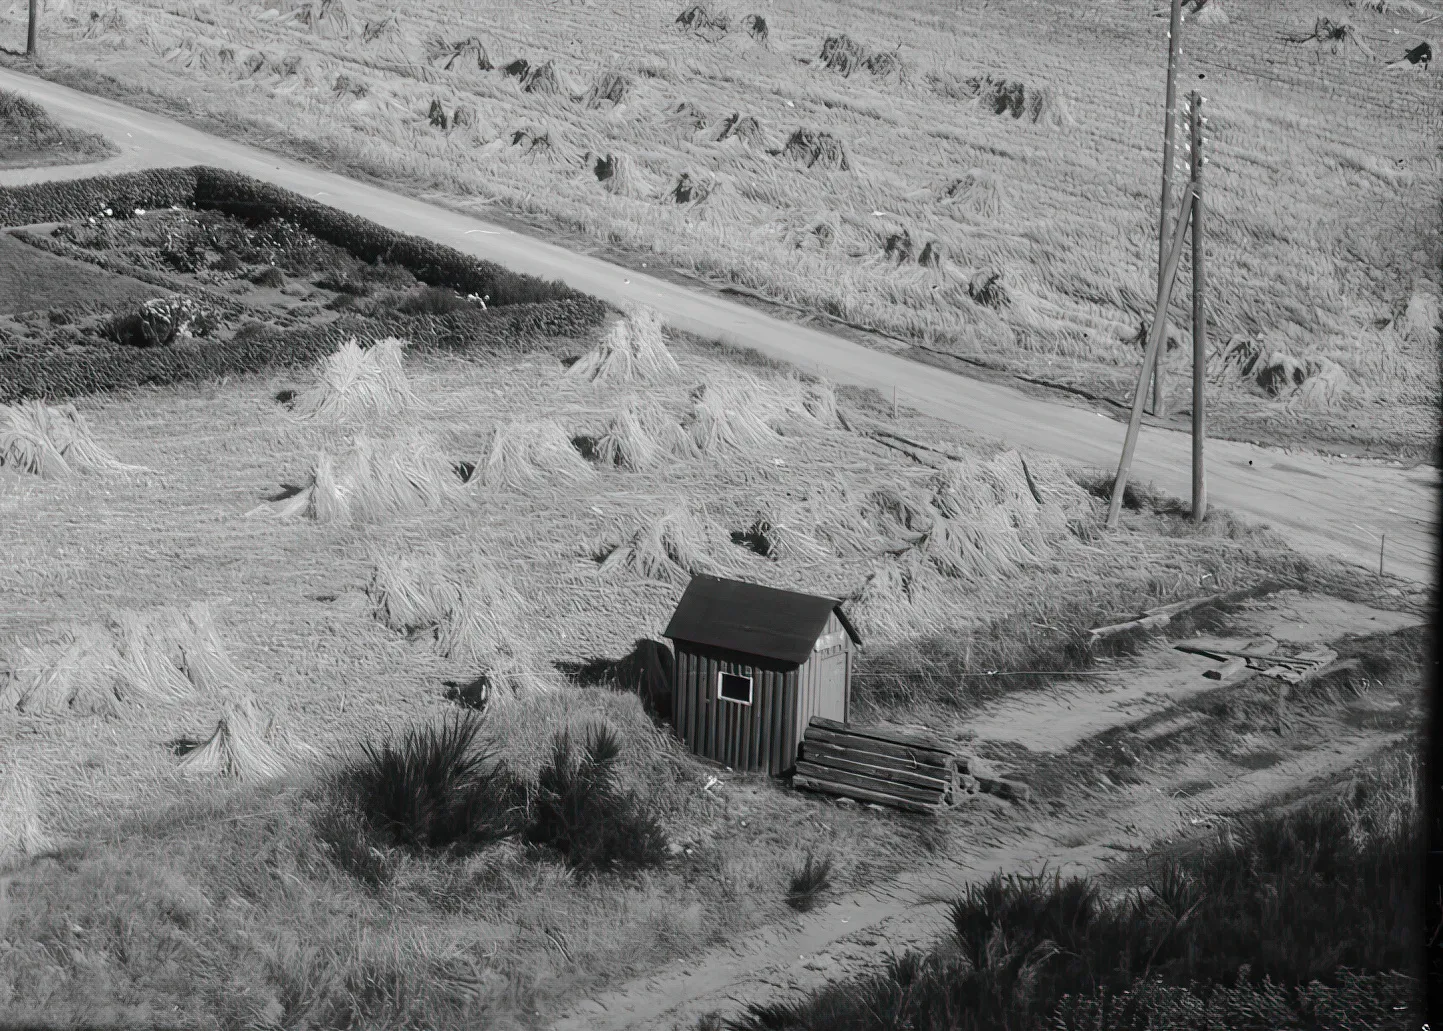 Billede af Spåbæk Trinbræt - her i 1962, hvor banen er nedlagt og skinner og sveller er ved at blive fjernet.